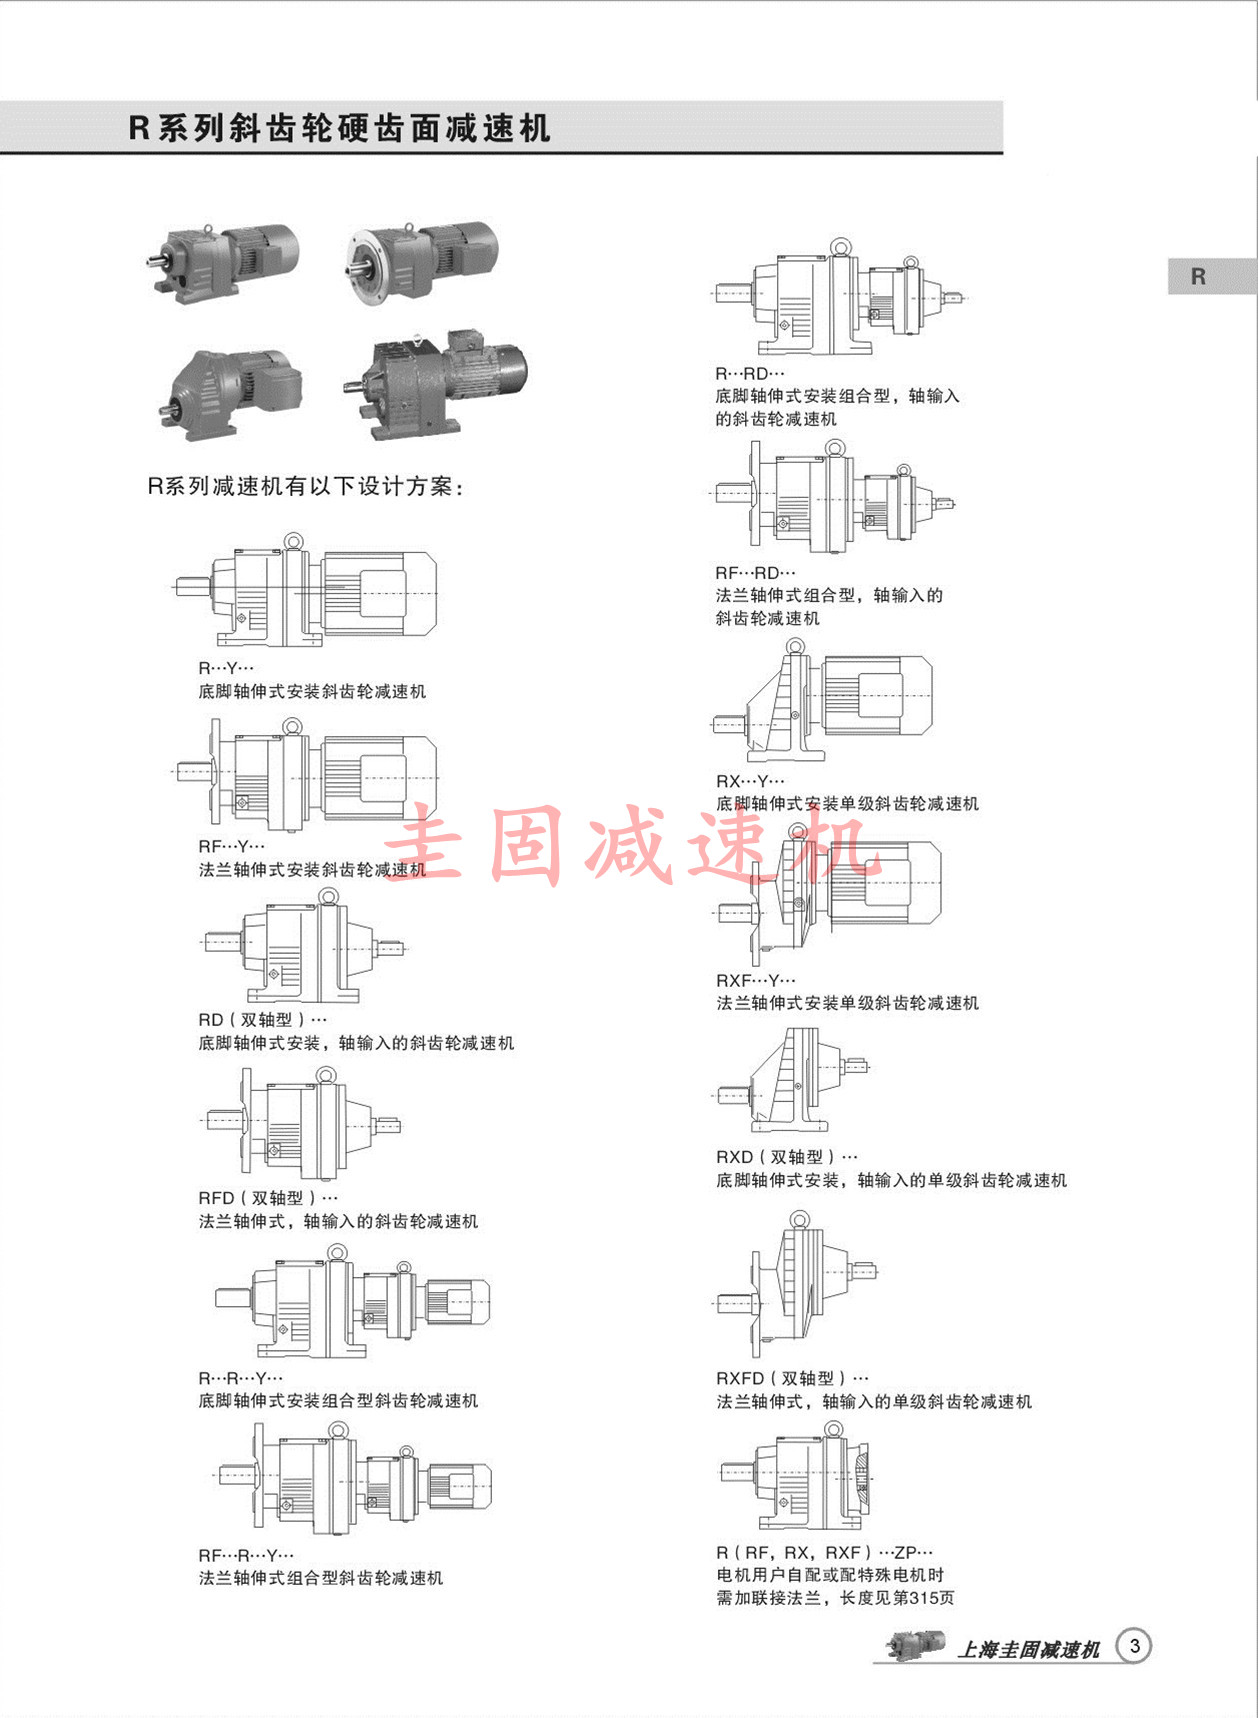 上海圭固R97减速机、R97齿轮减速机、R97减速机3D模型、R97减速机厂家直供 R97减速机,R97齿轮减速机,减速机R97,R97减速器,R97减速电机